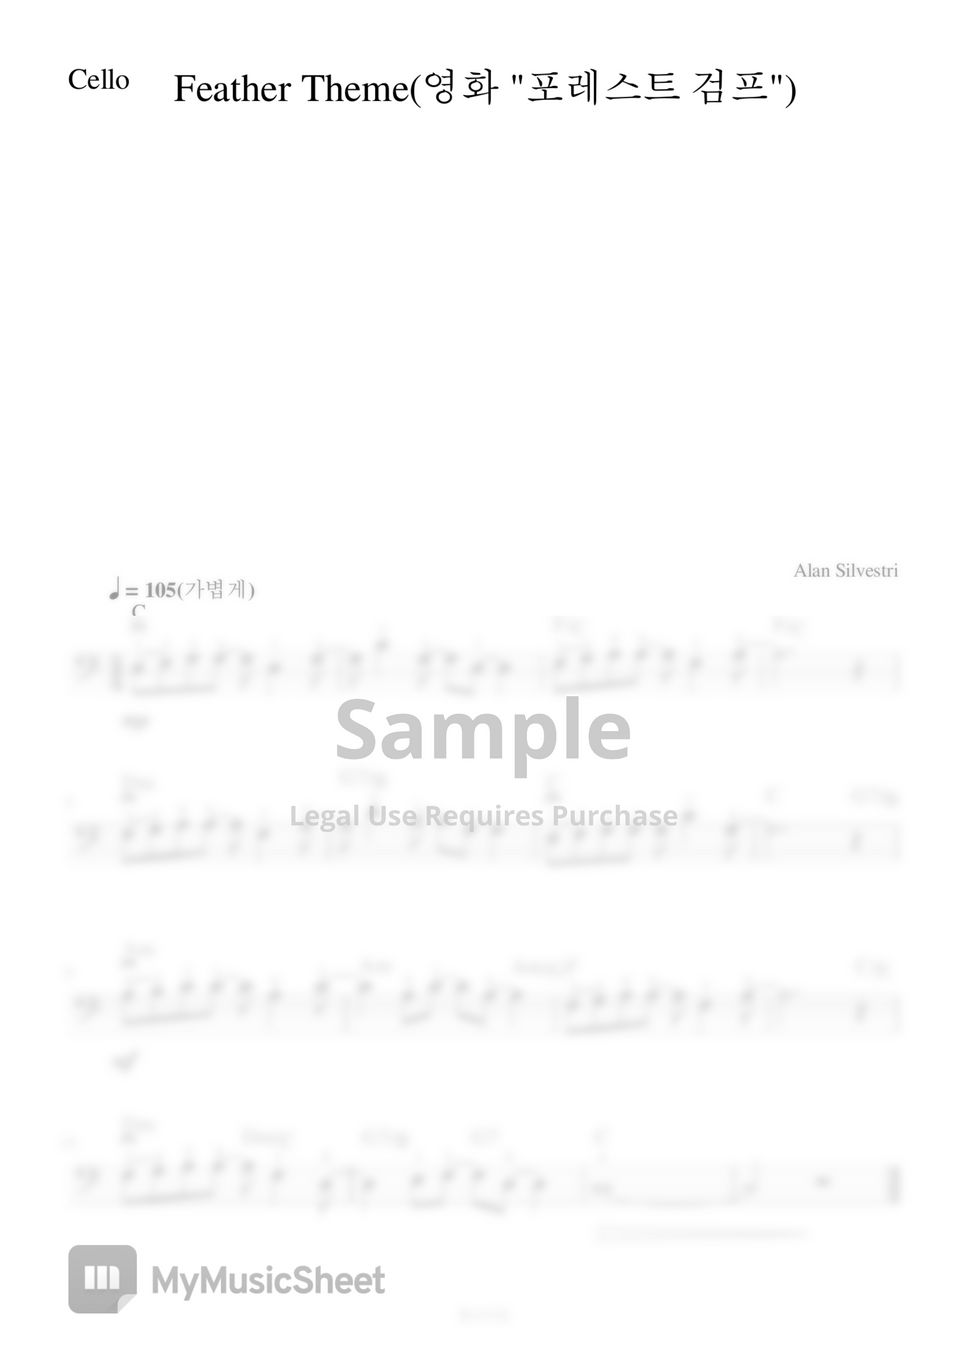 Alan Silvestri - Feather Theme (첼로+피아노, 계이름 & 손가락 번호 포함) by 첼로마을